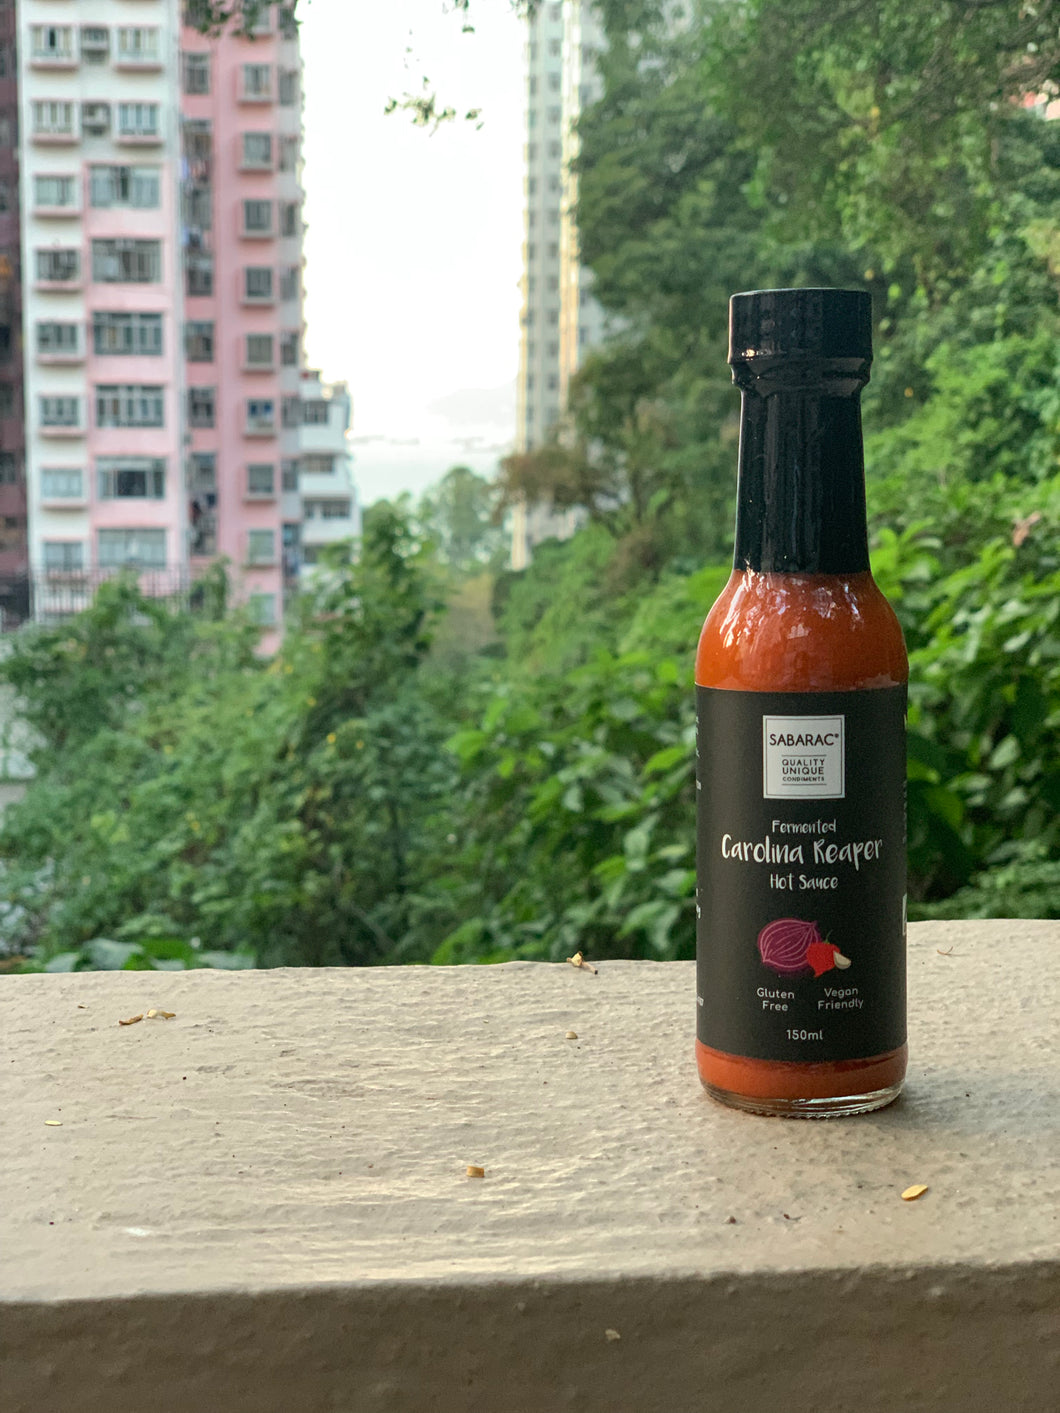 Sabarac - Fermented Carolina Reaper Hot Sauce